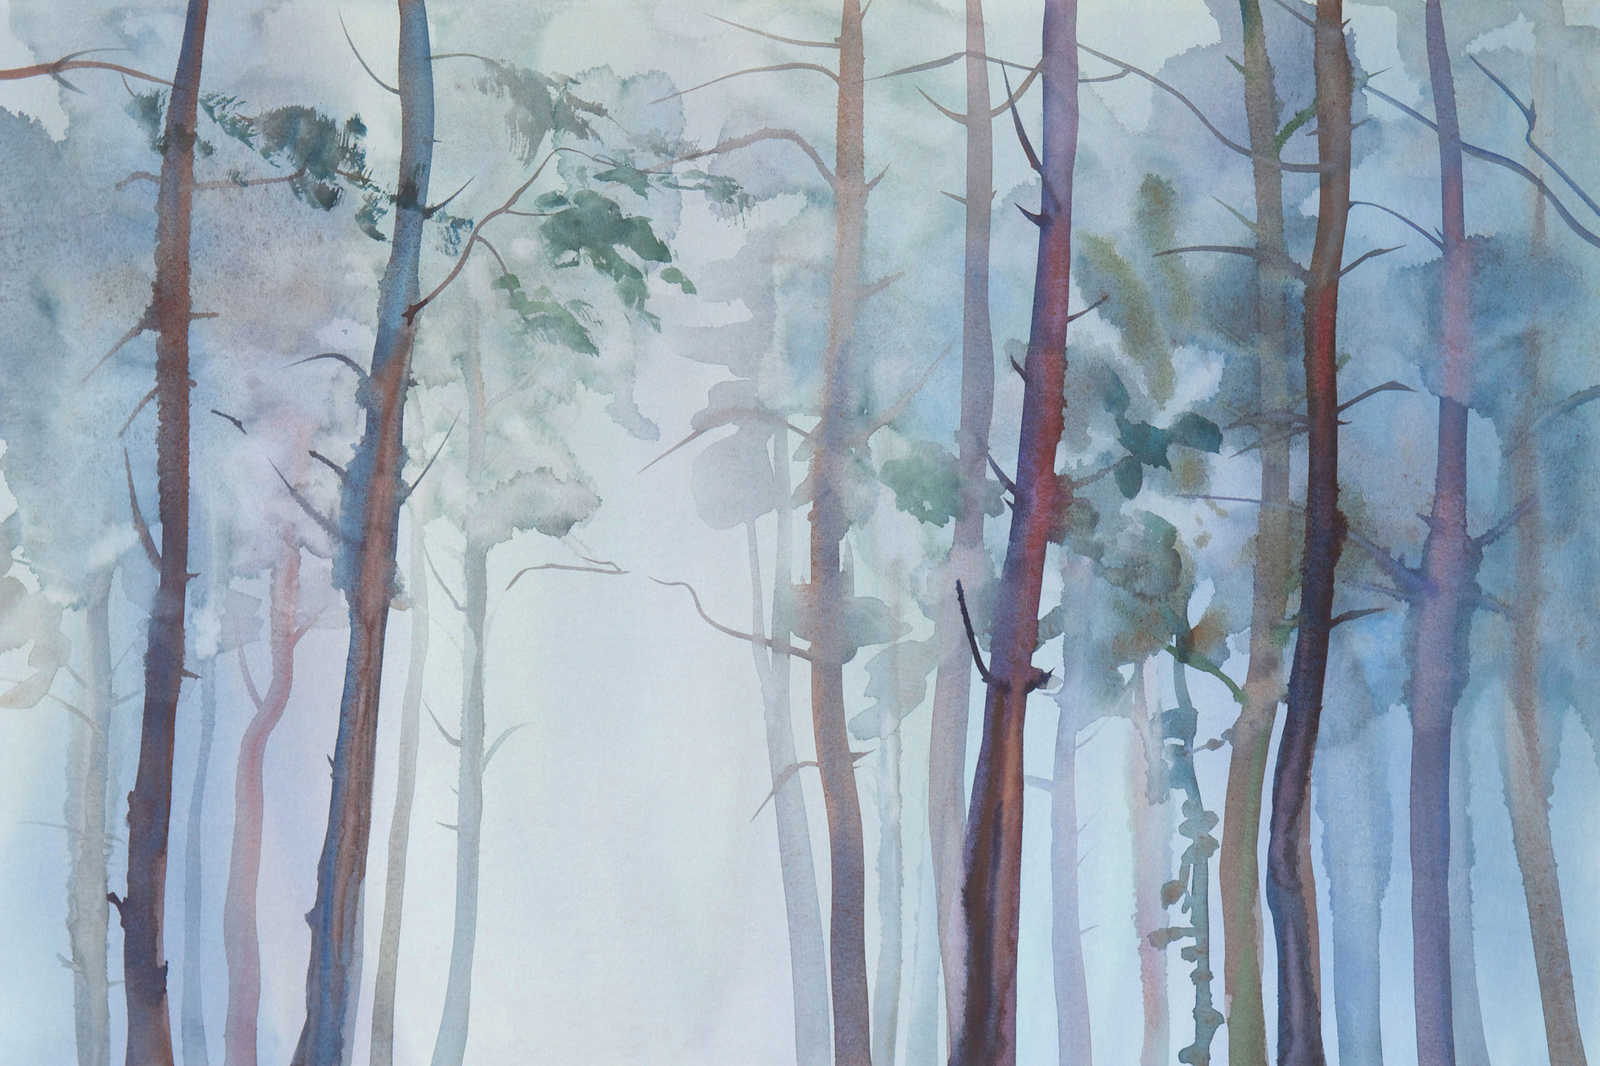             Toile avec motif de forêt de style aquarelle - 0,90 m x 0,60 m
        